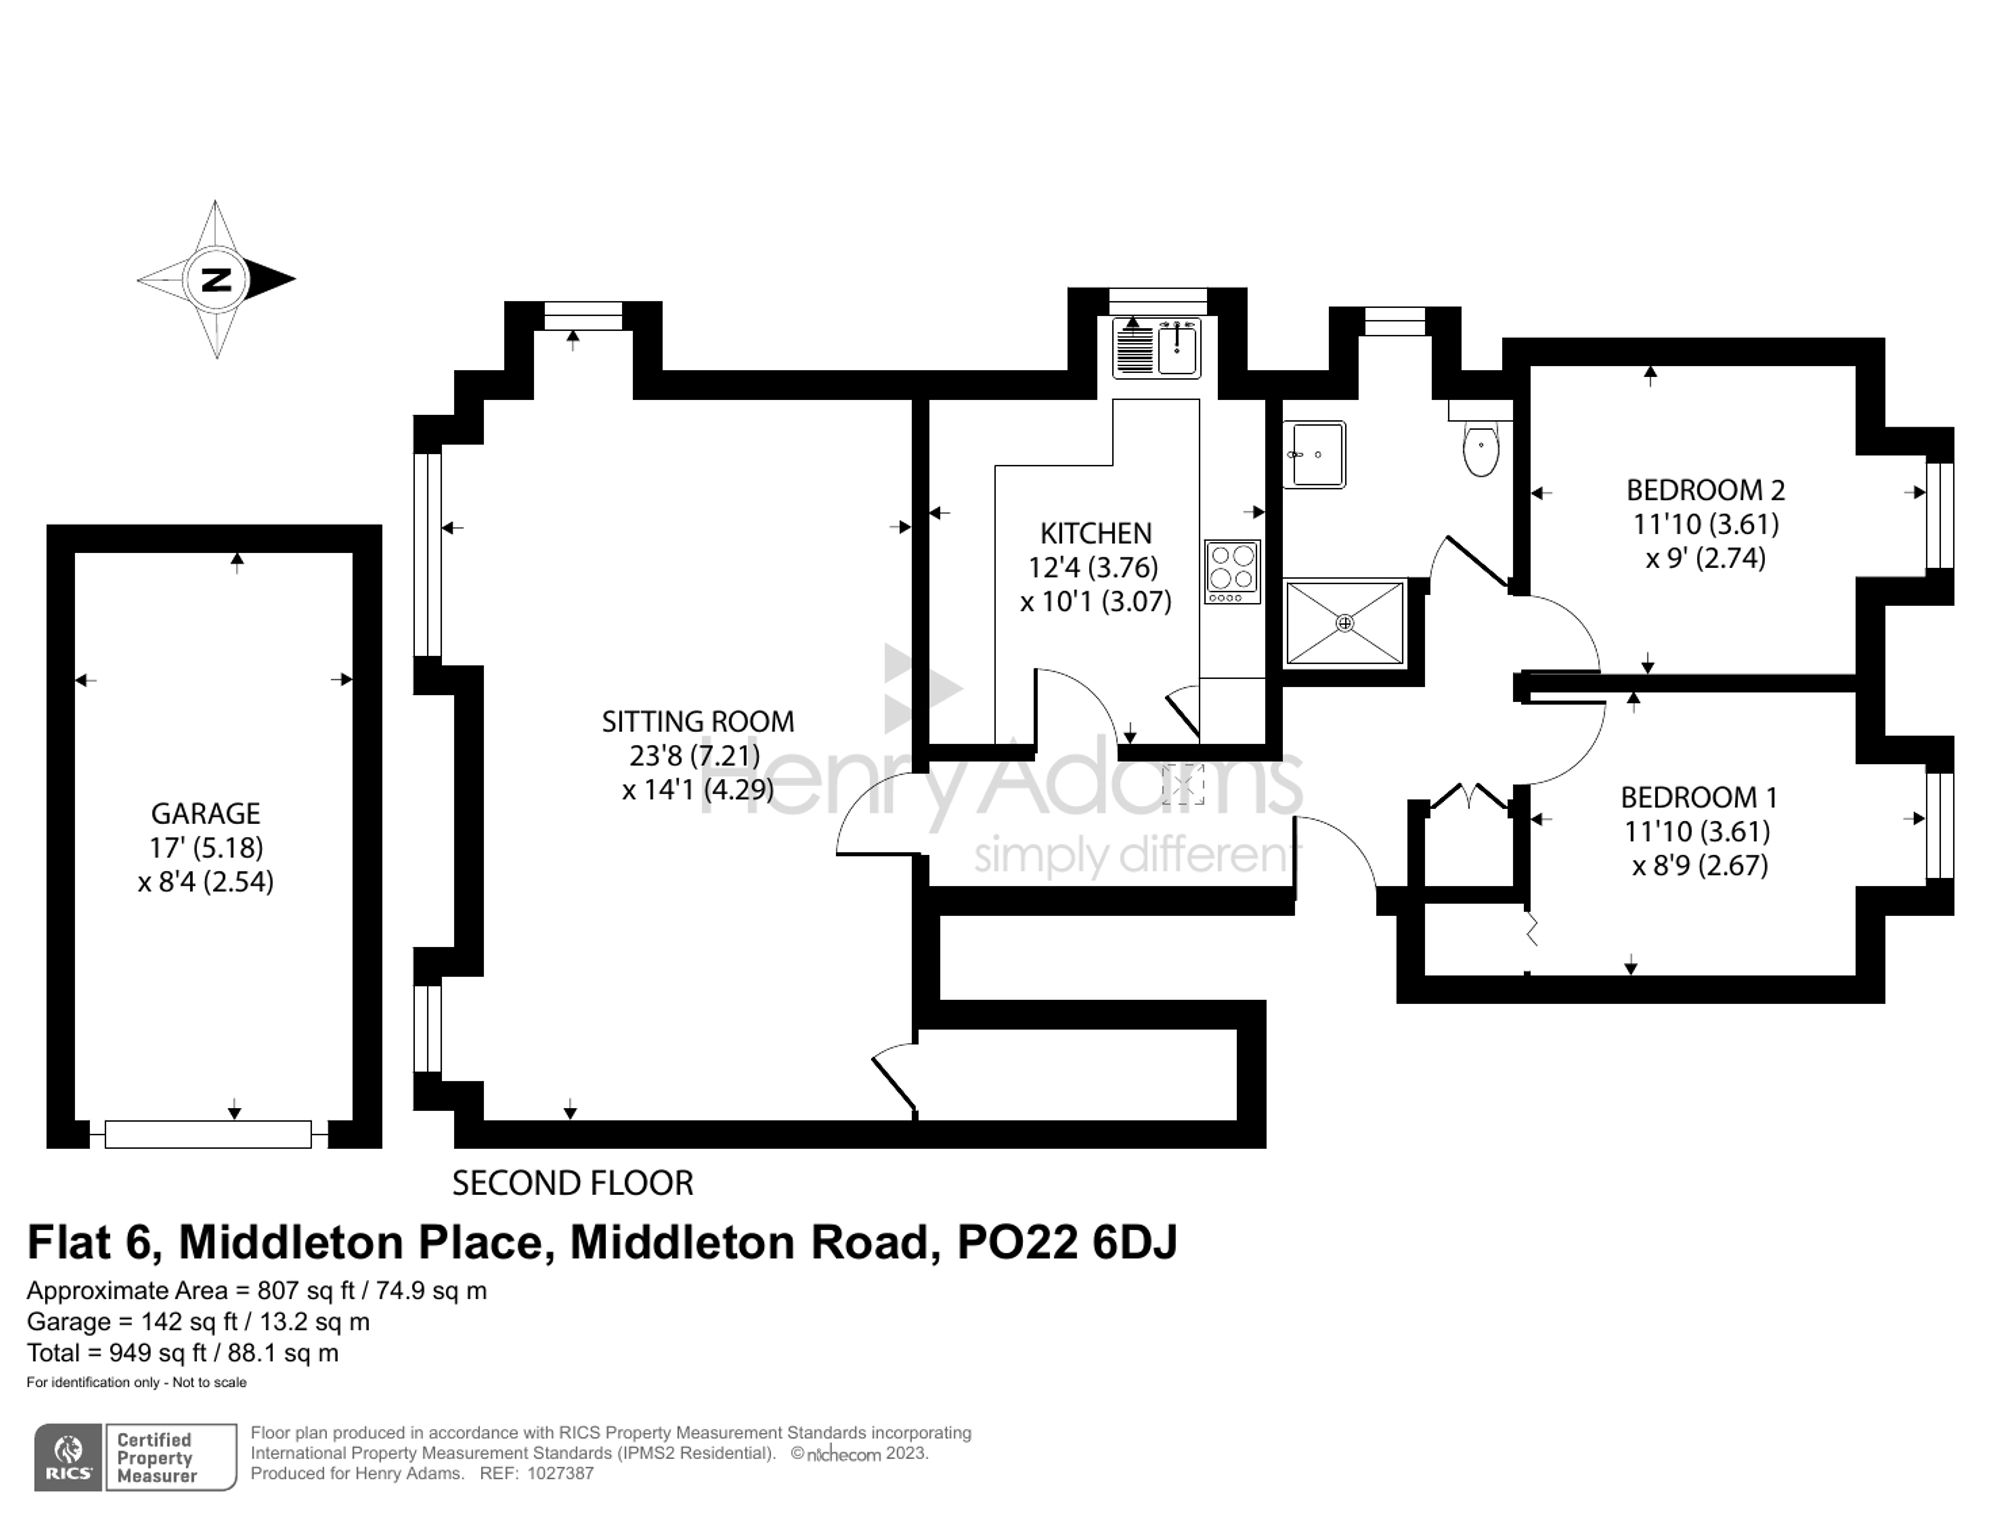 Middleton Road, Middleton Place Middleton Road, PO22 floorplans